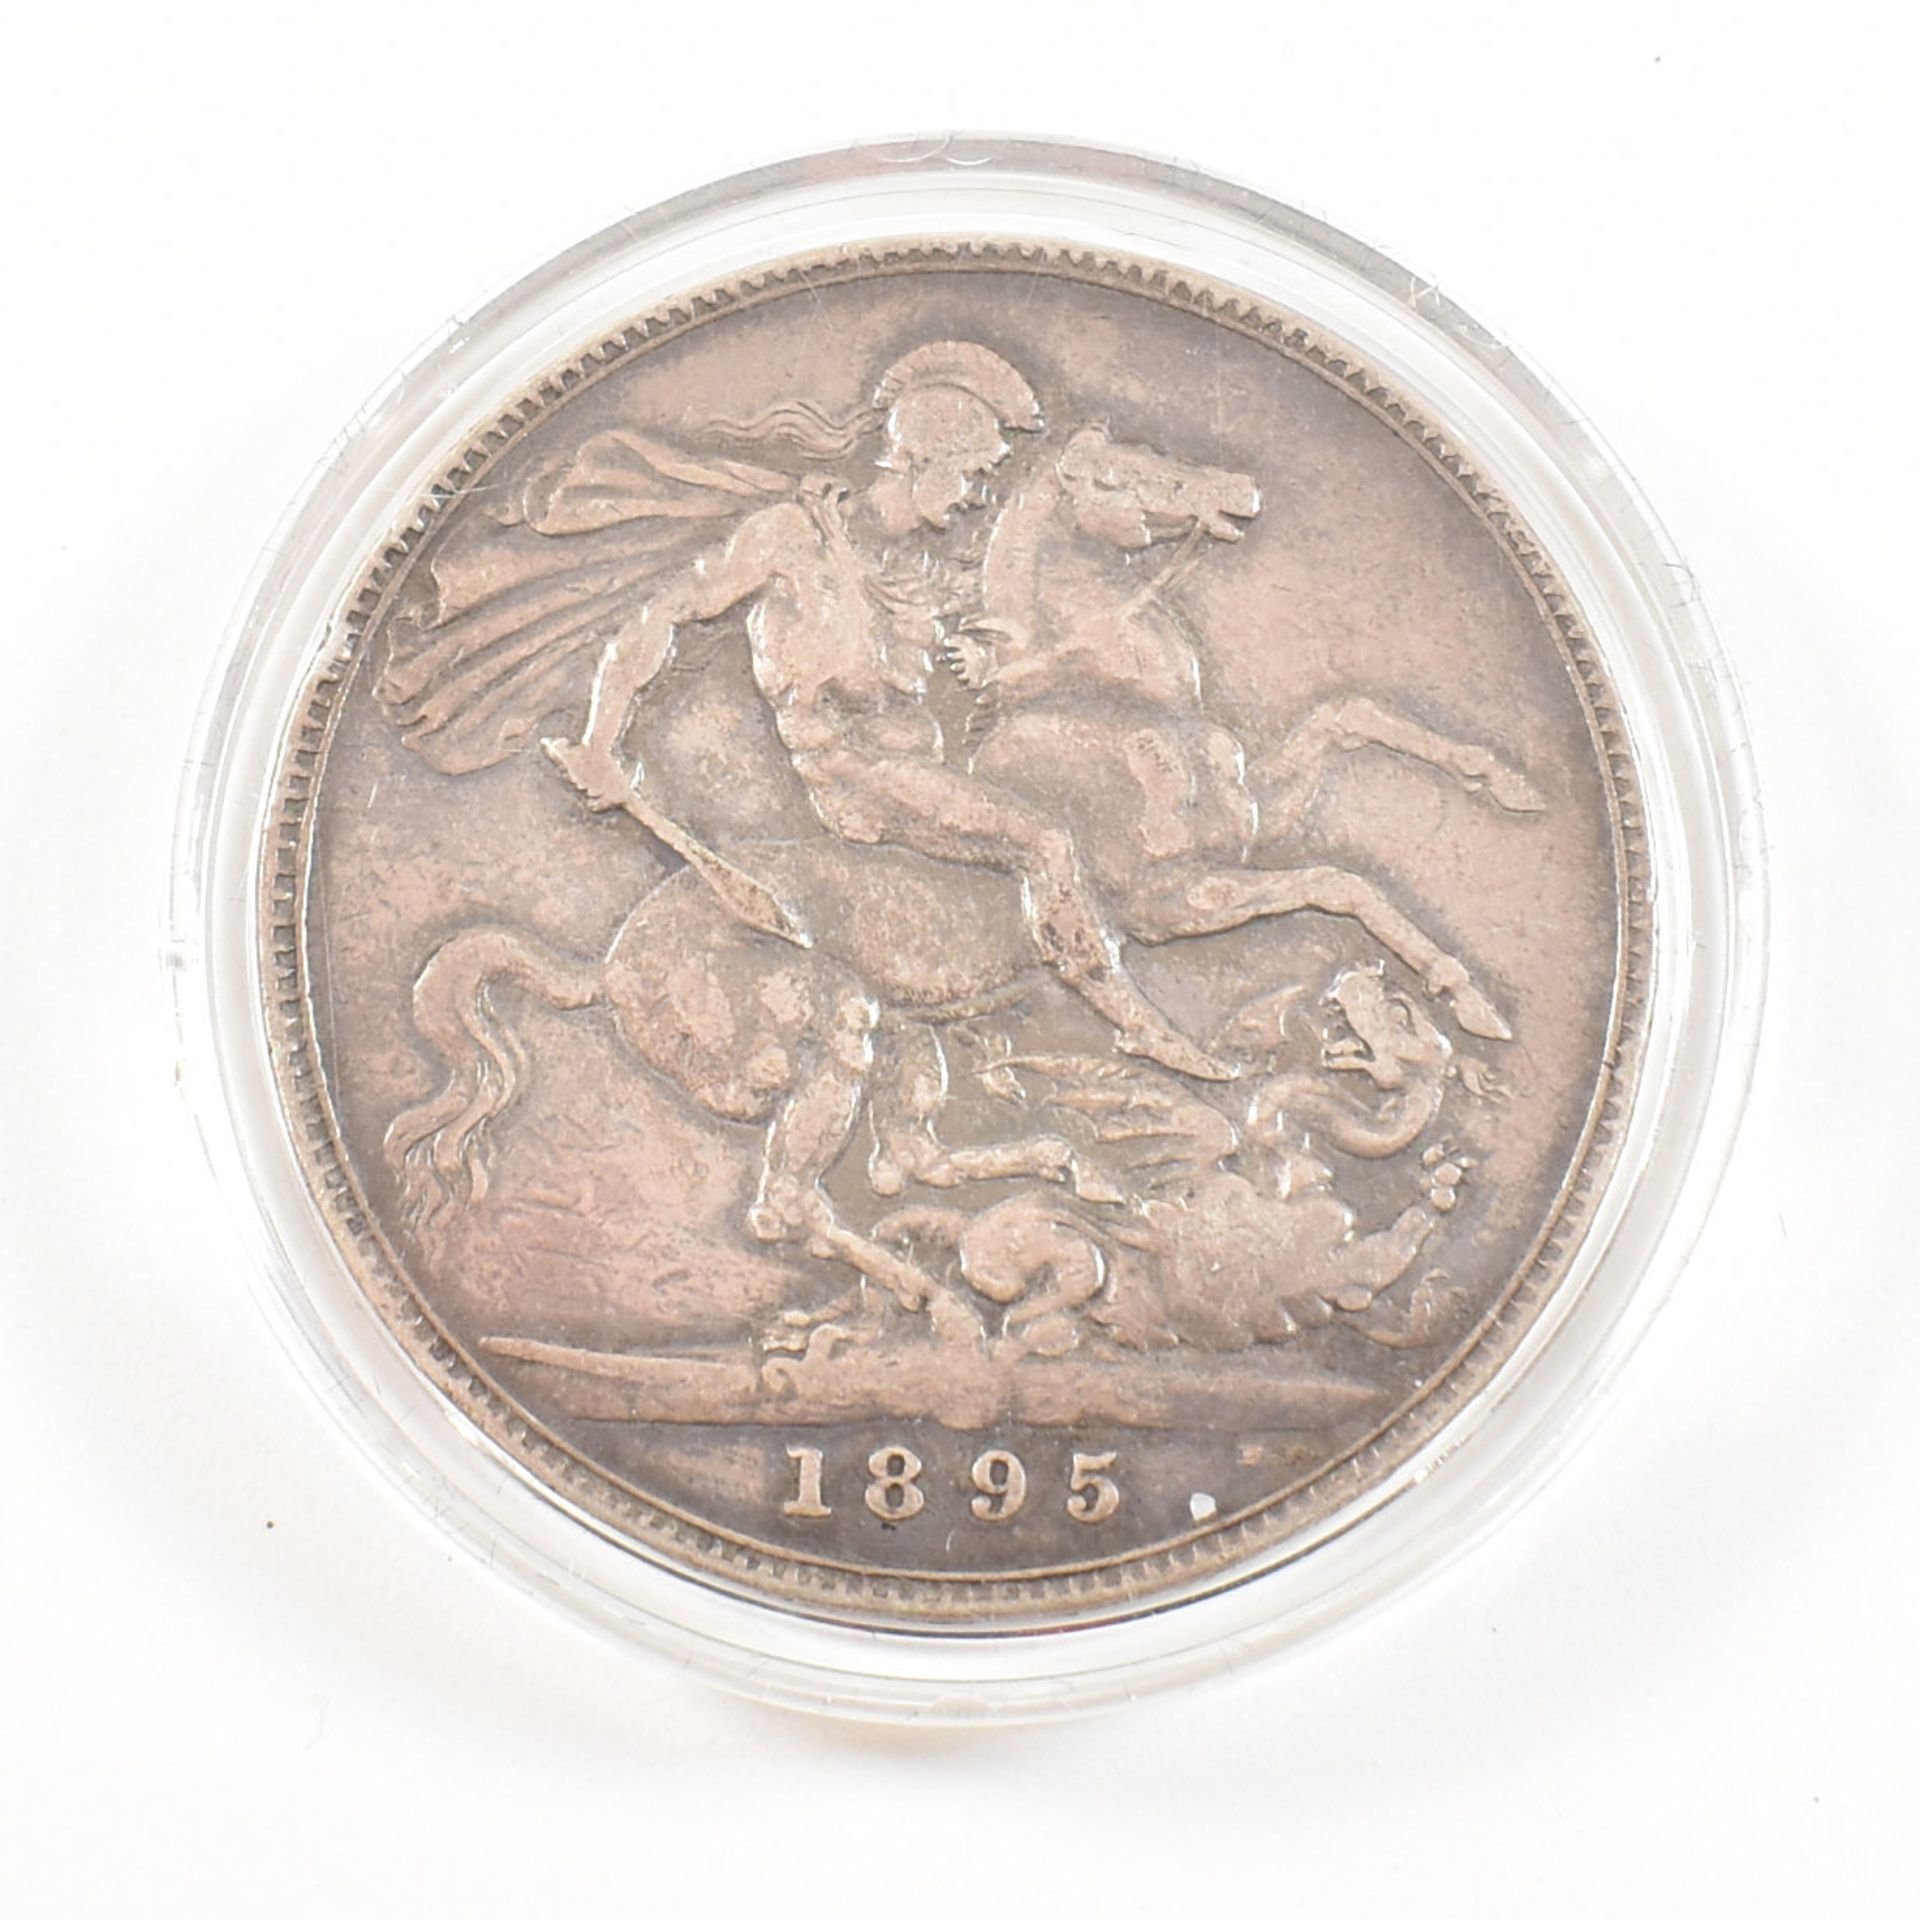 CASED 1895 SILVER CROWN COIN VICTORIA - Bild 4 aus 4